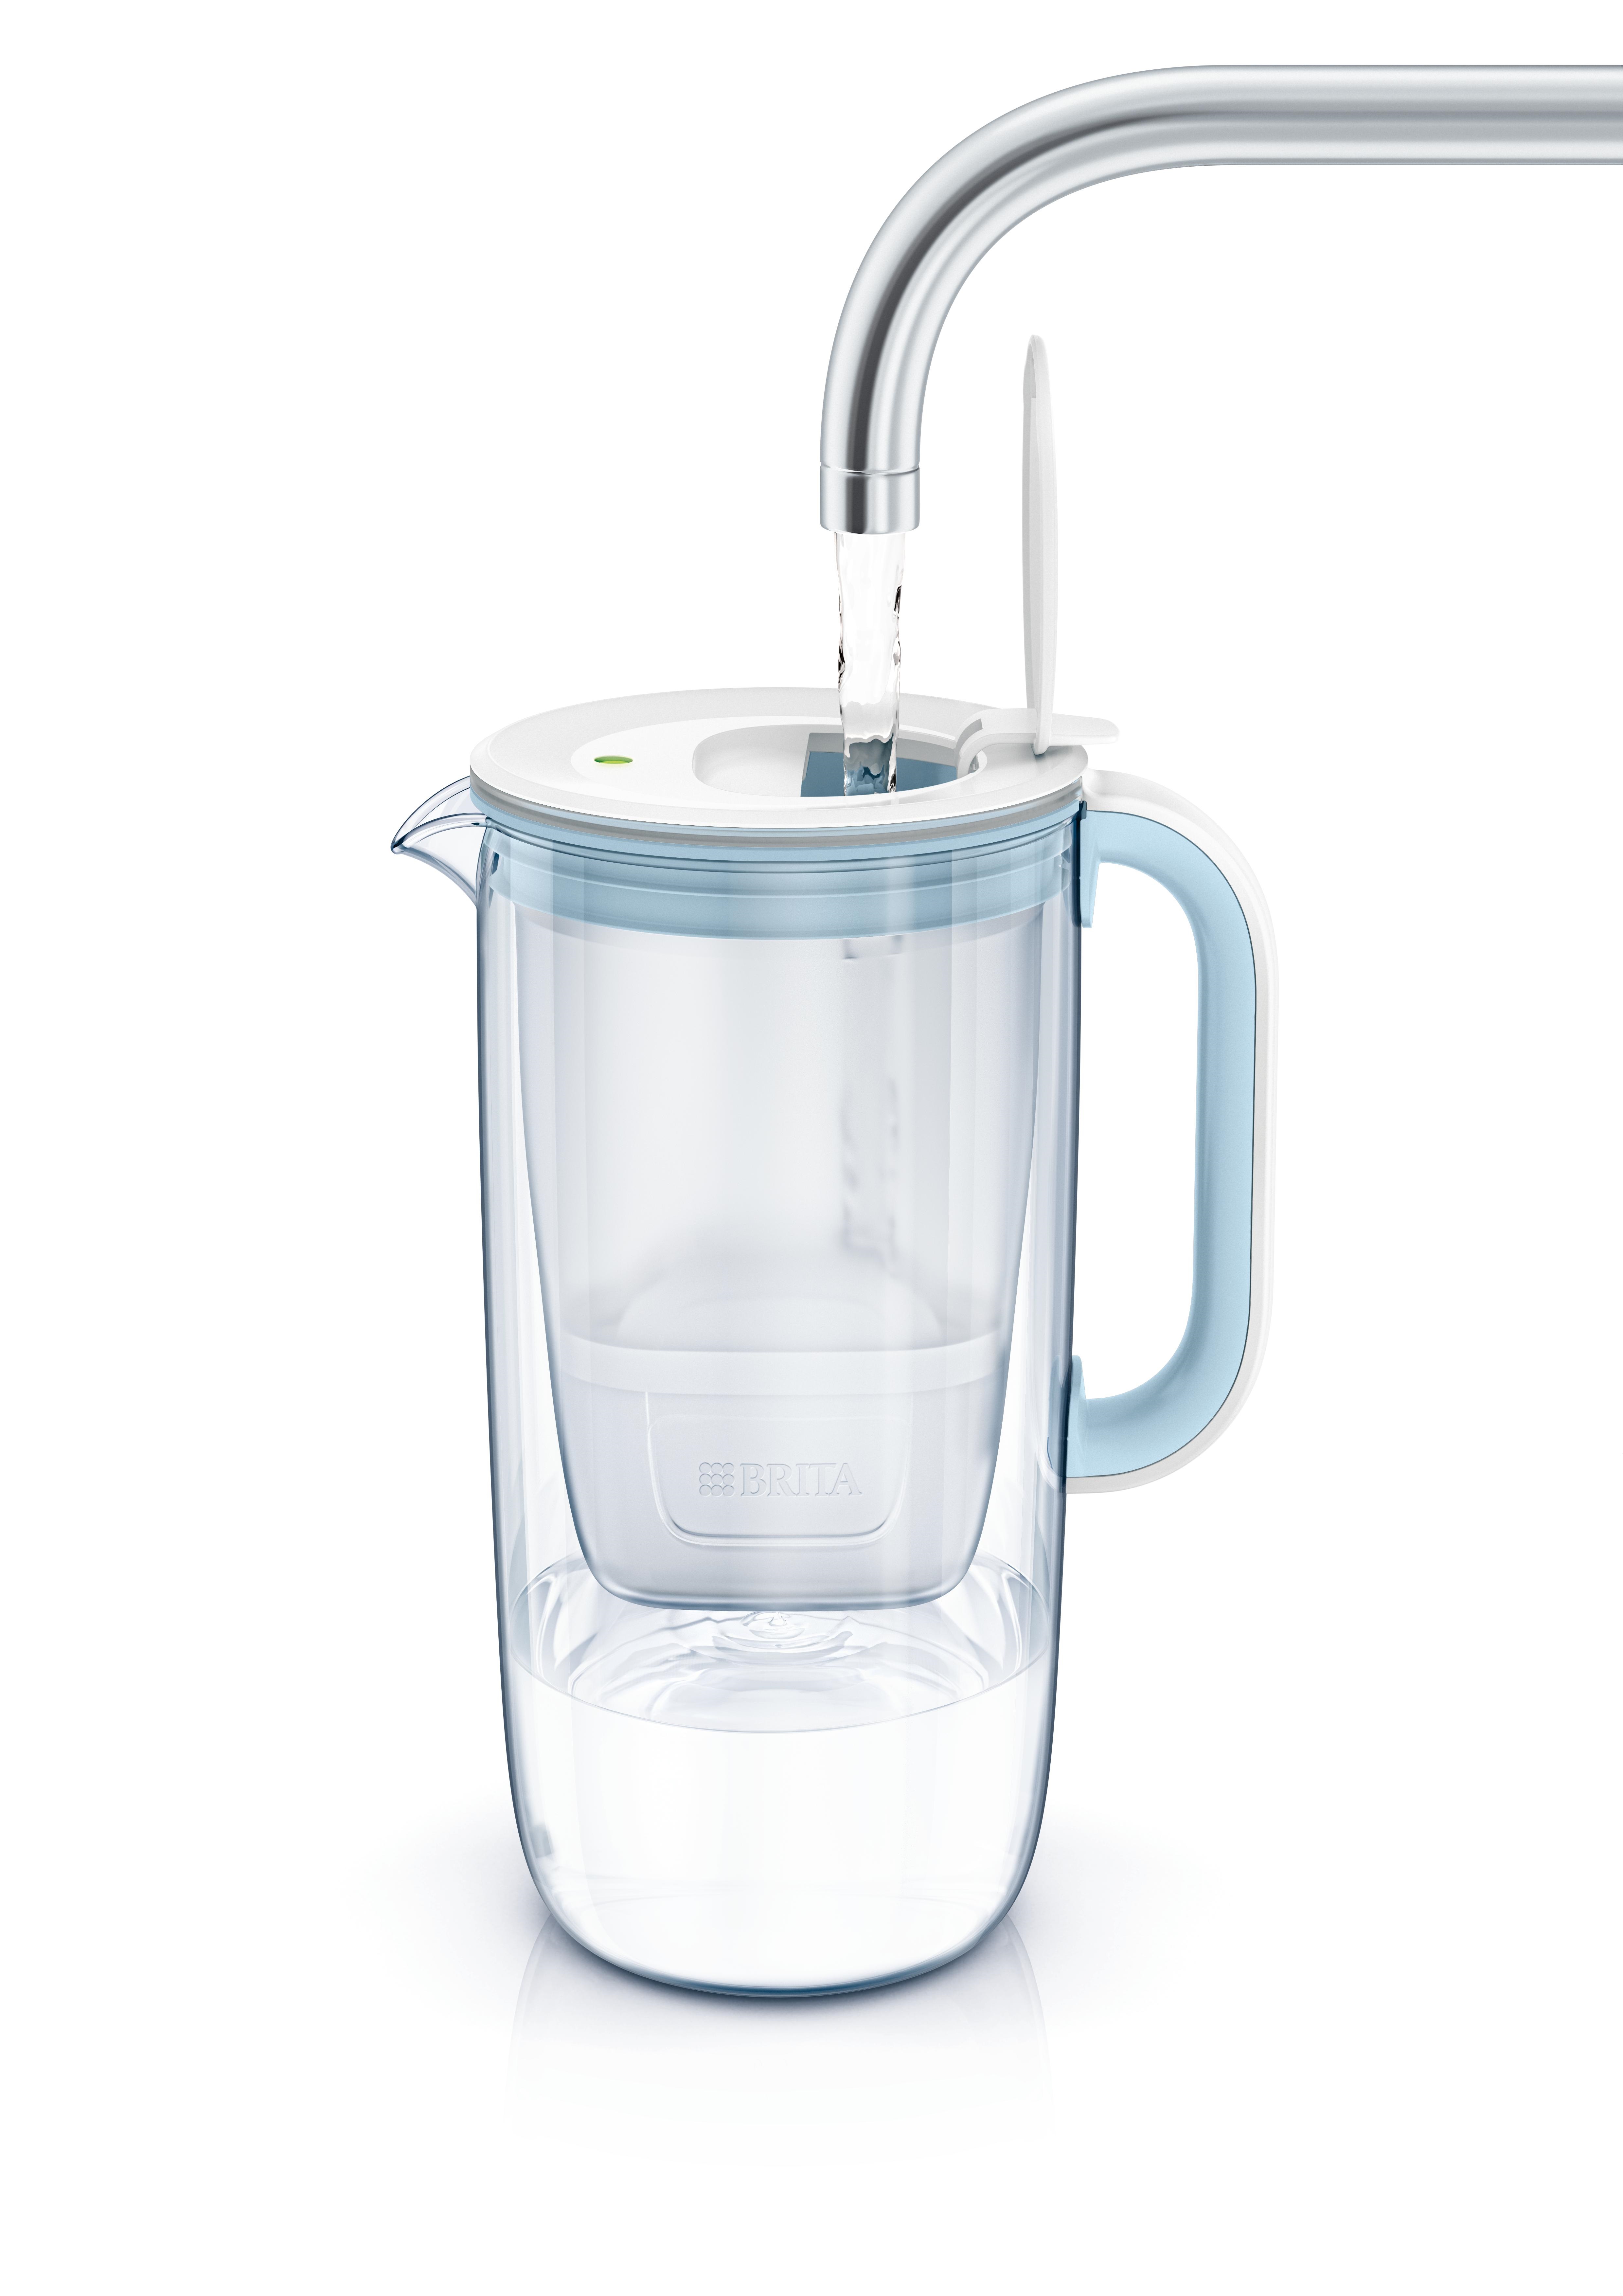 Brita maxtra pro all-in-1 filtro de agua para jarra blanco